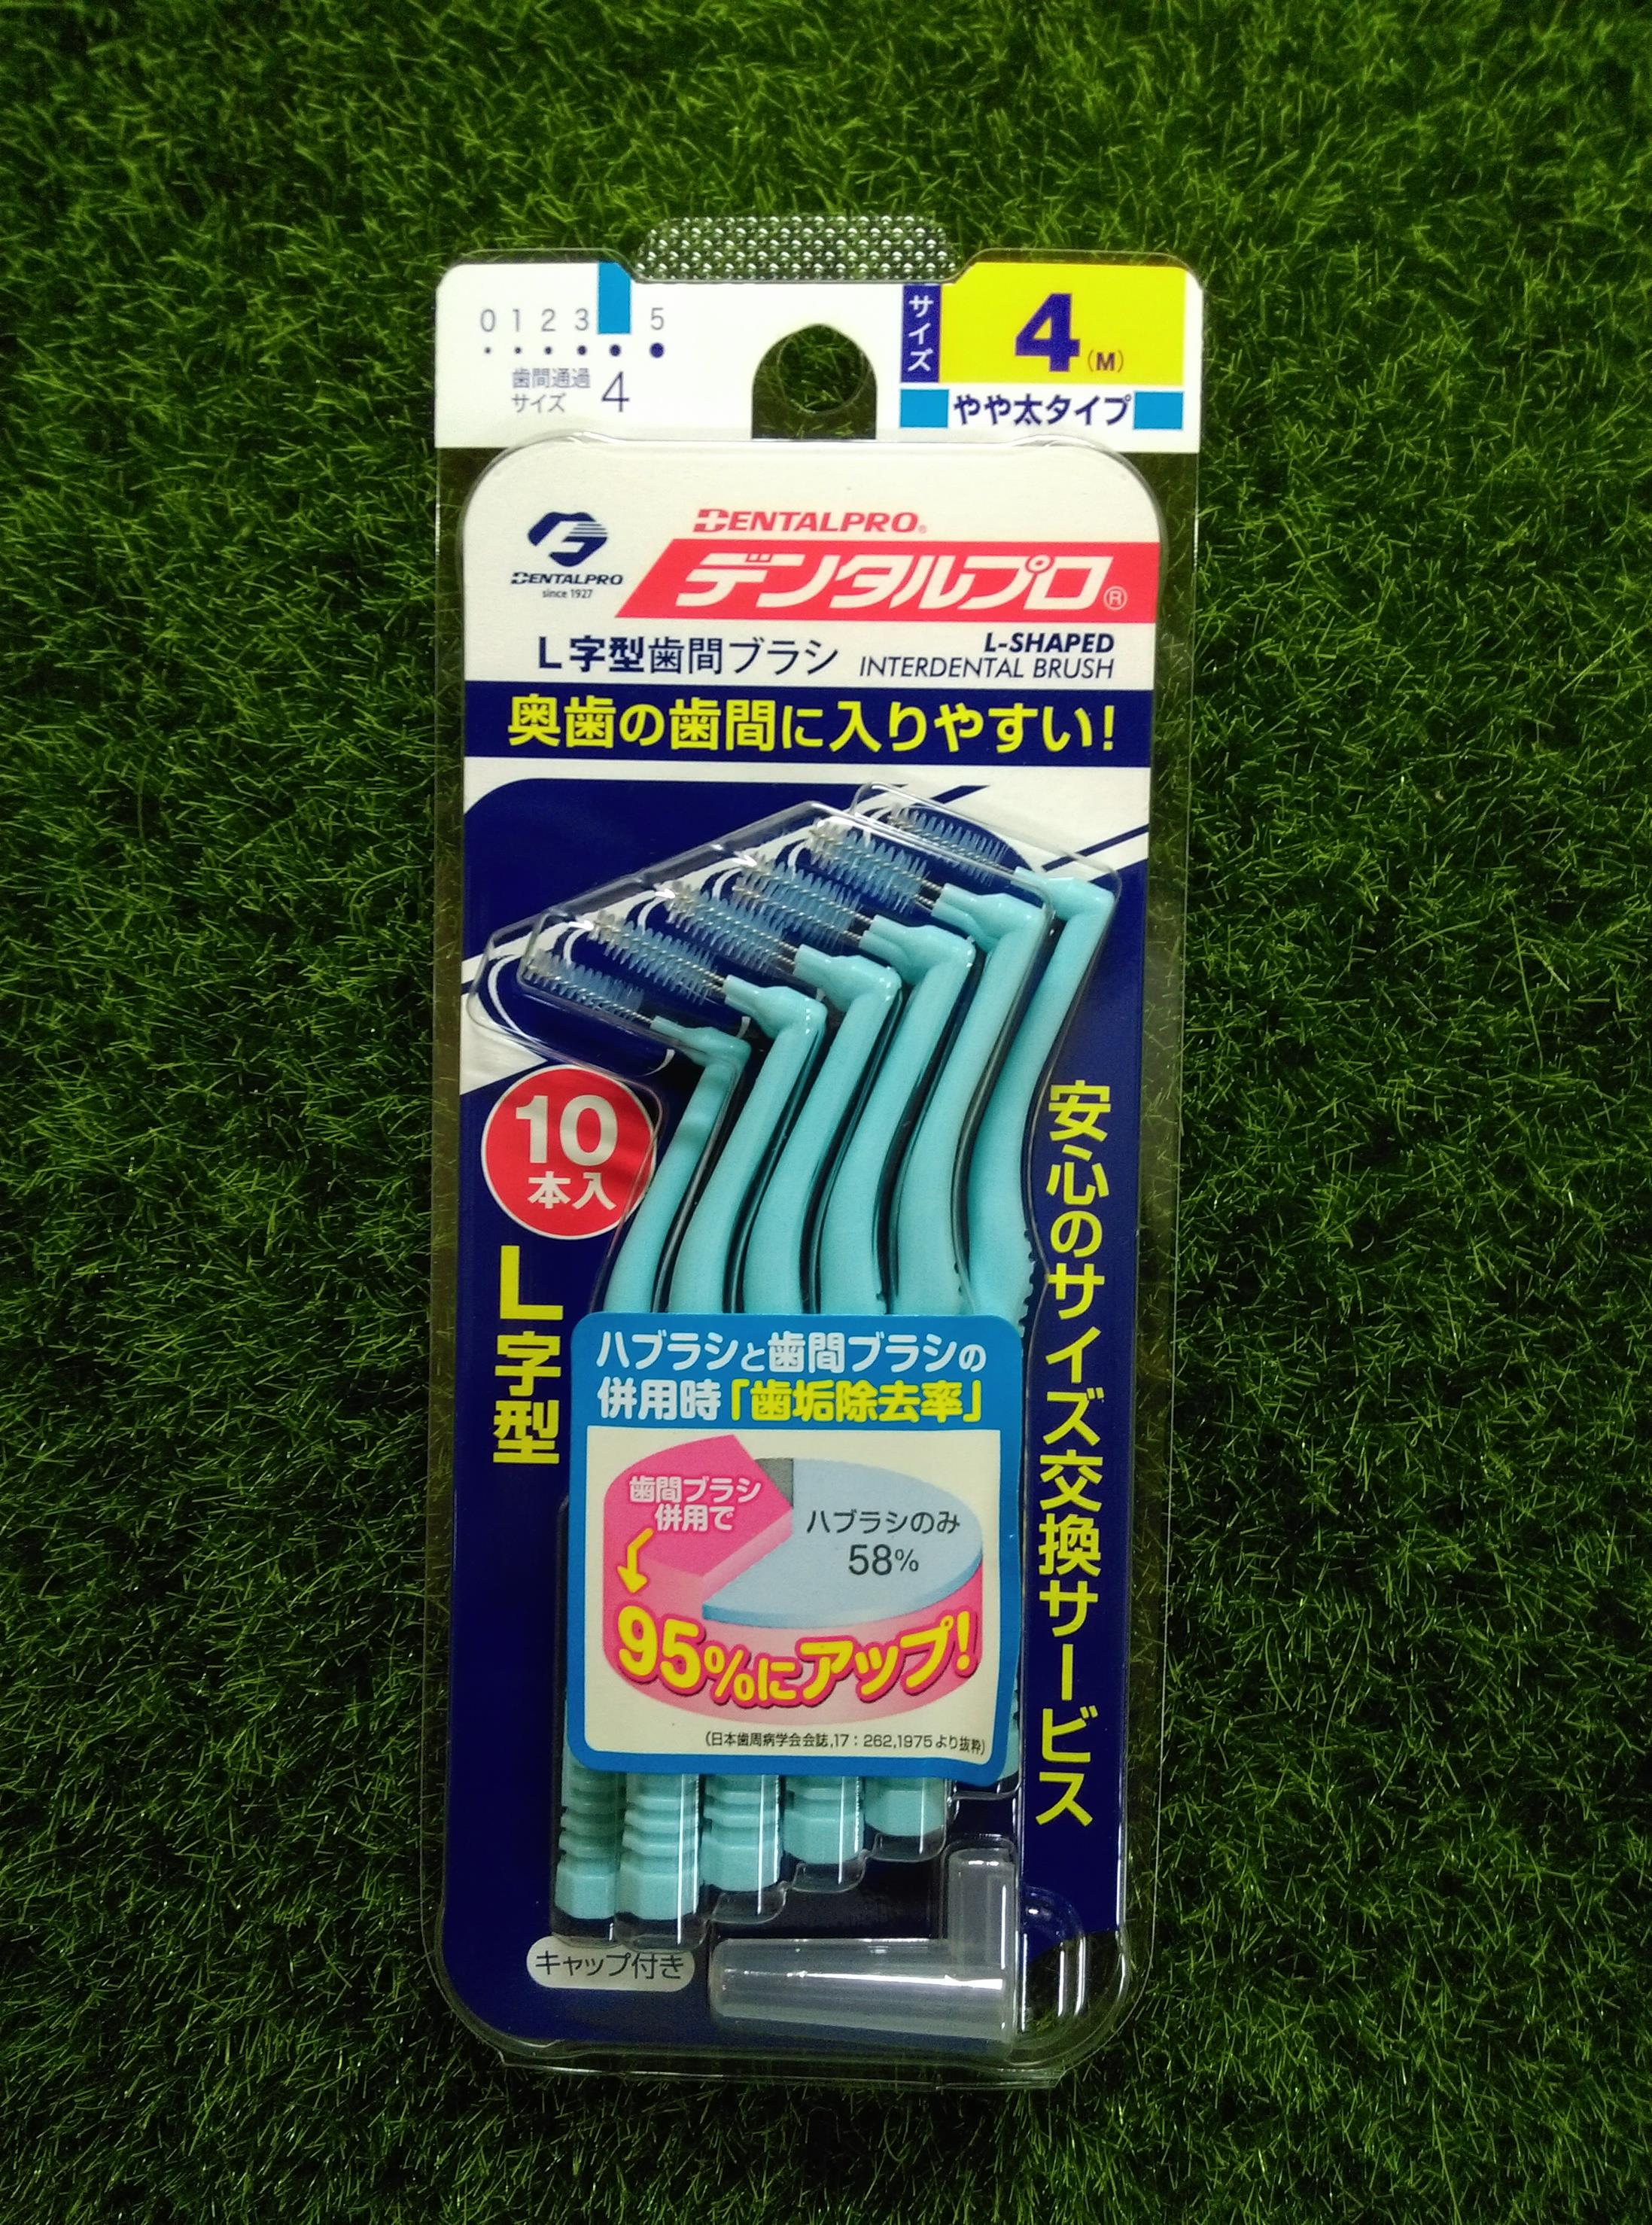 潔齒 牙間刷 L型 4 (M) 1.2mm 10入#日本jacks 齒間刷 dentalpro